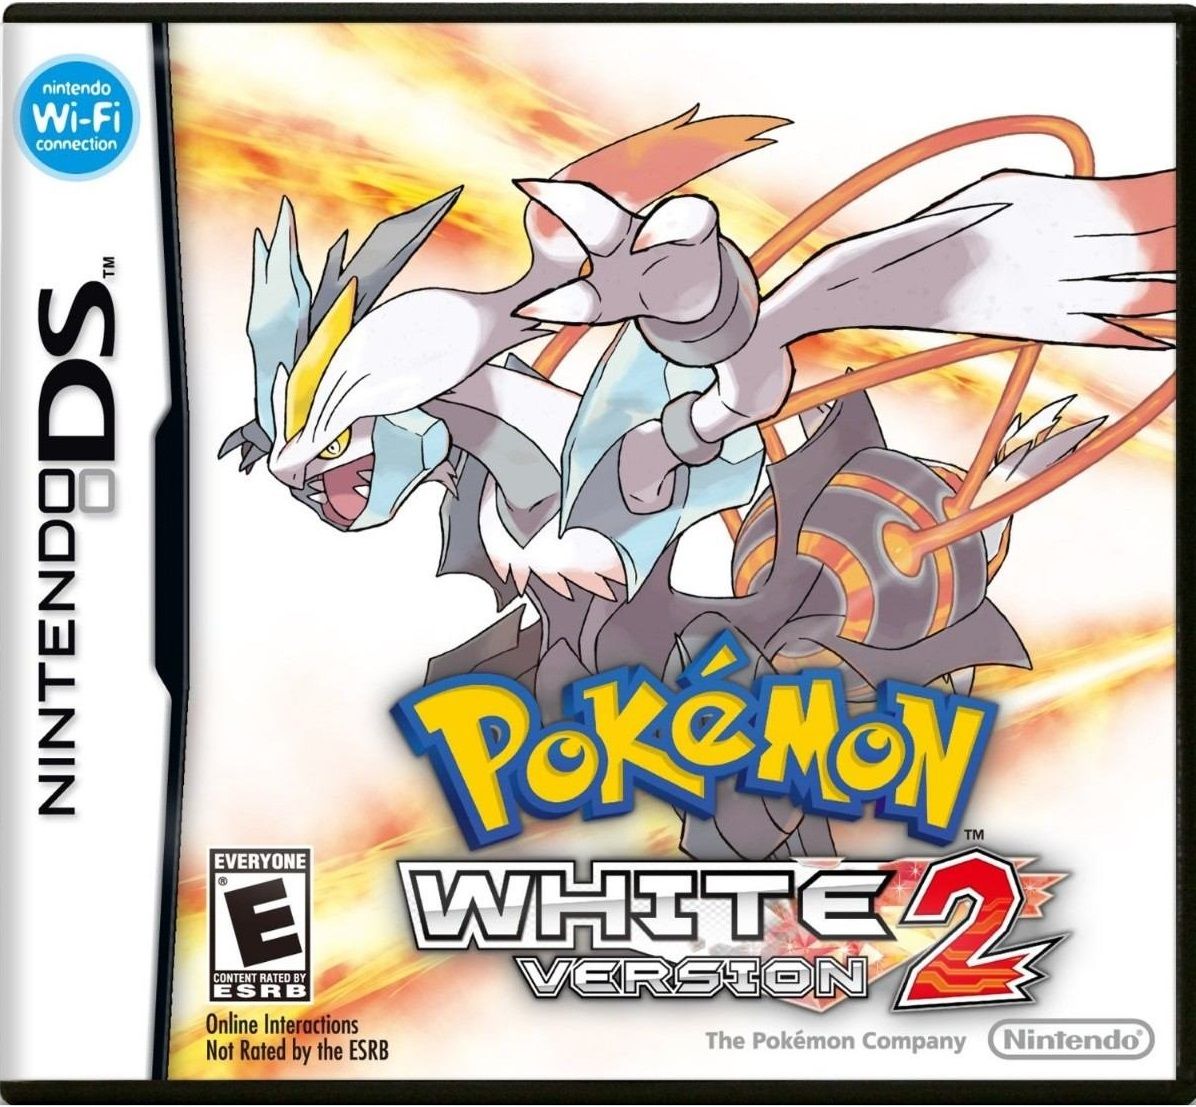 Pokemon White Version 2